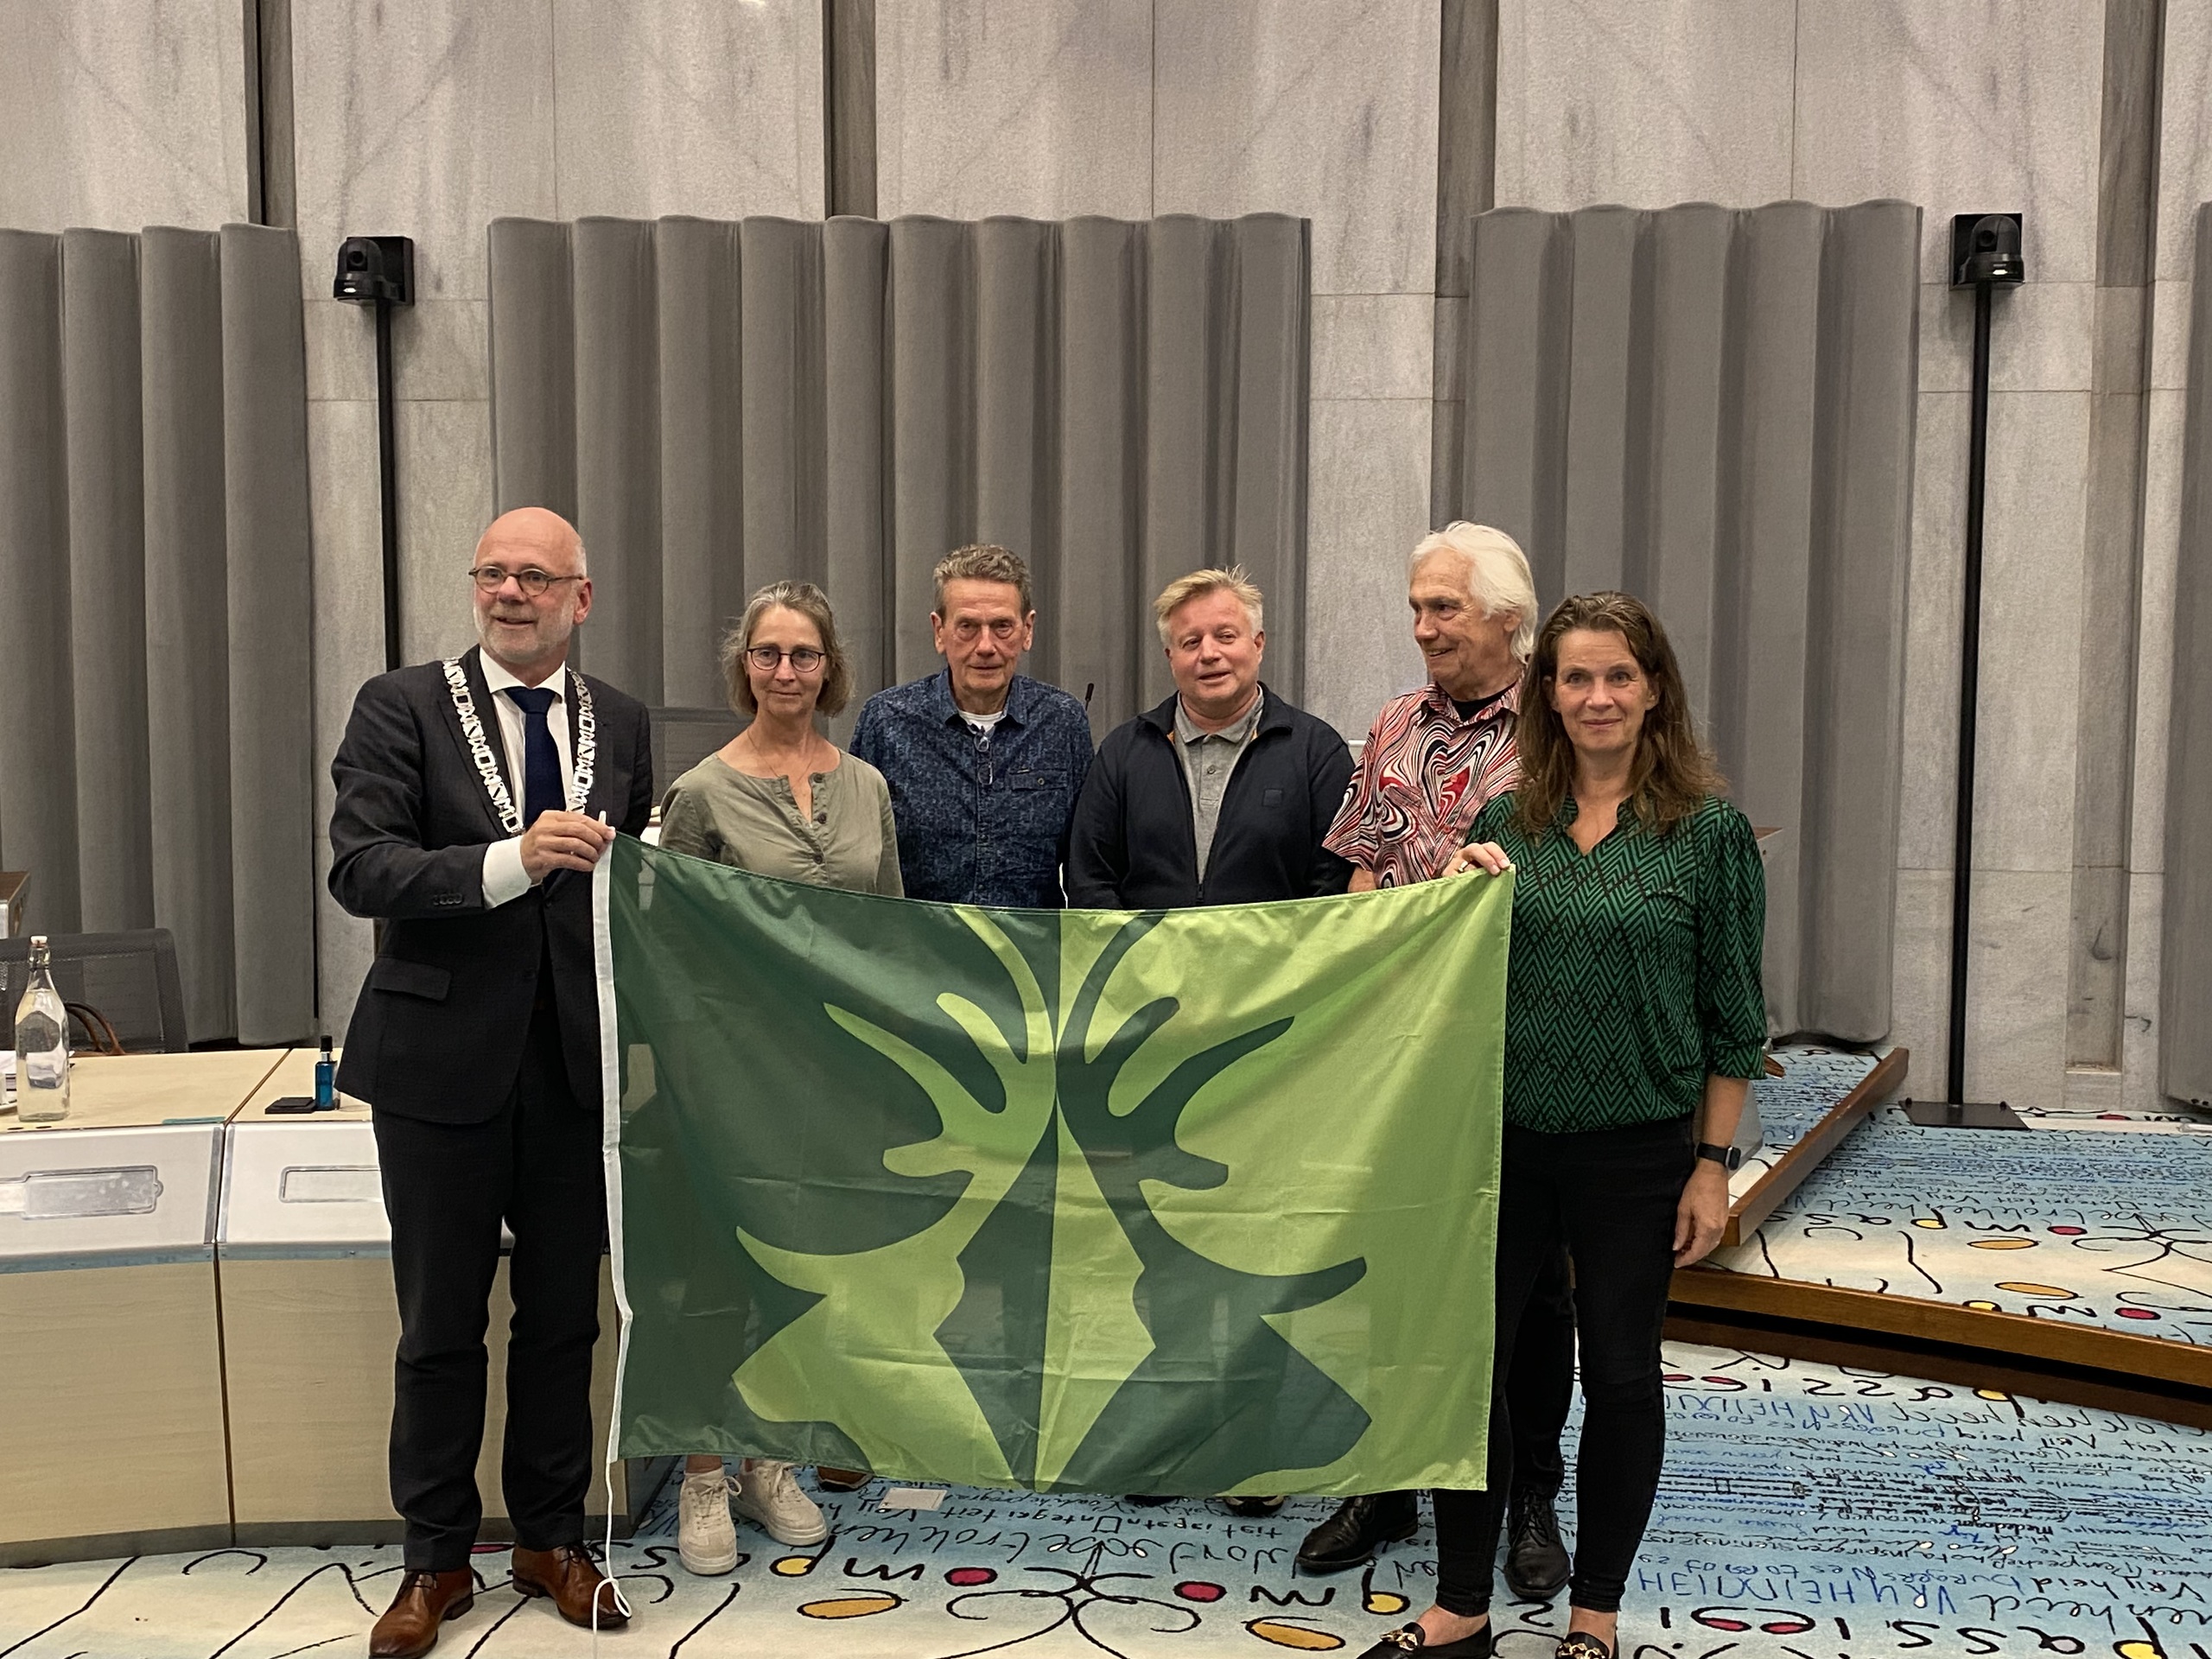 Vlag Laag-Soeren officieel vastgesteld door gemeenteraad Rheden